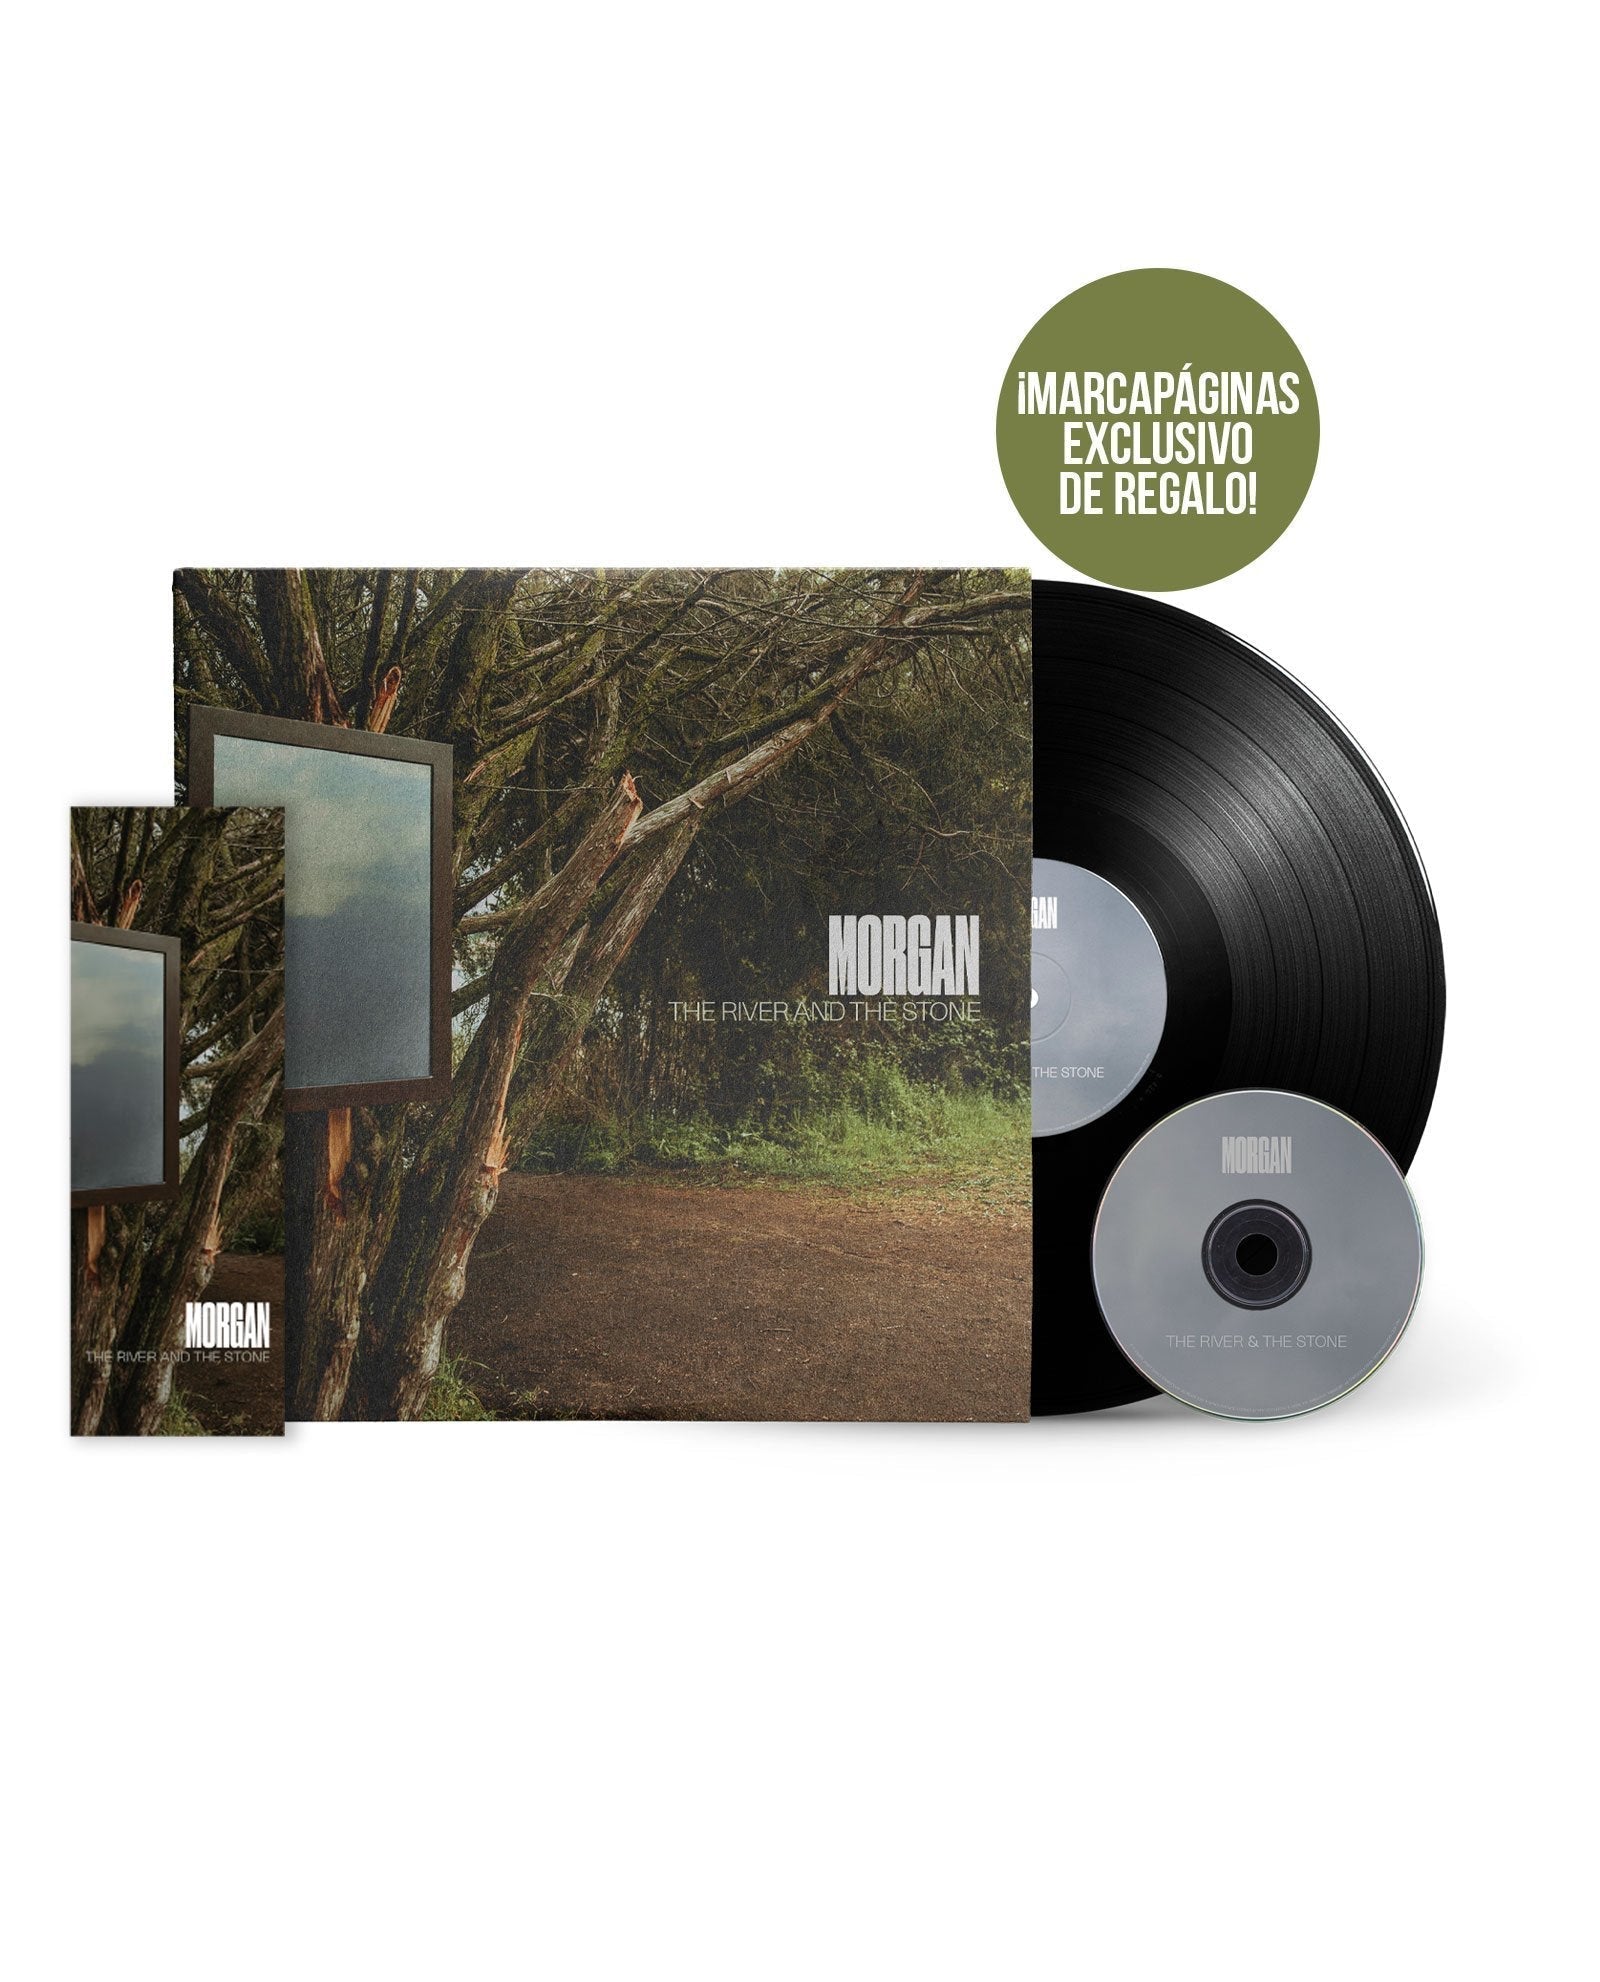 LP+CD The River and The Stone + MARCAPÁGINAS EXCLUSIVO DE REGALO - Morgan - Rocktud - Morgan